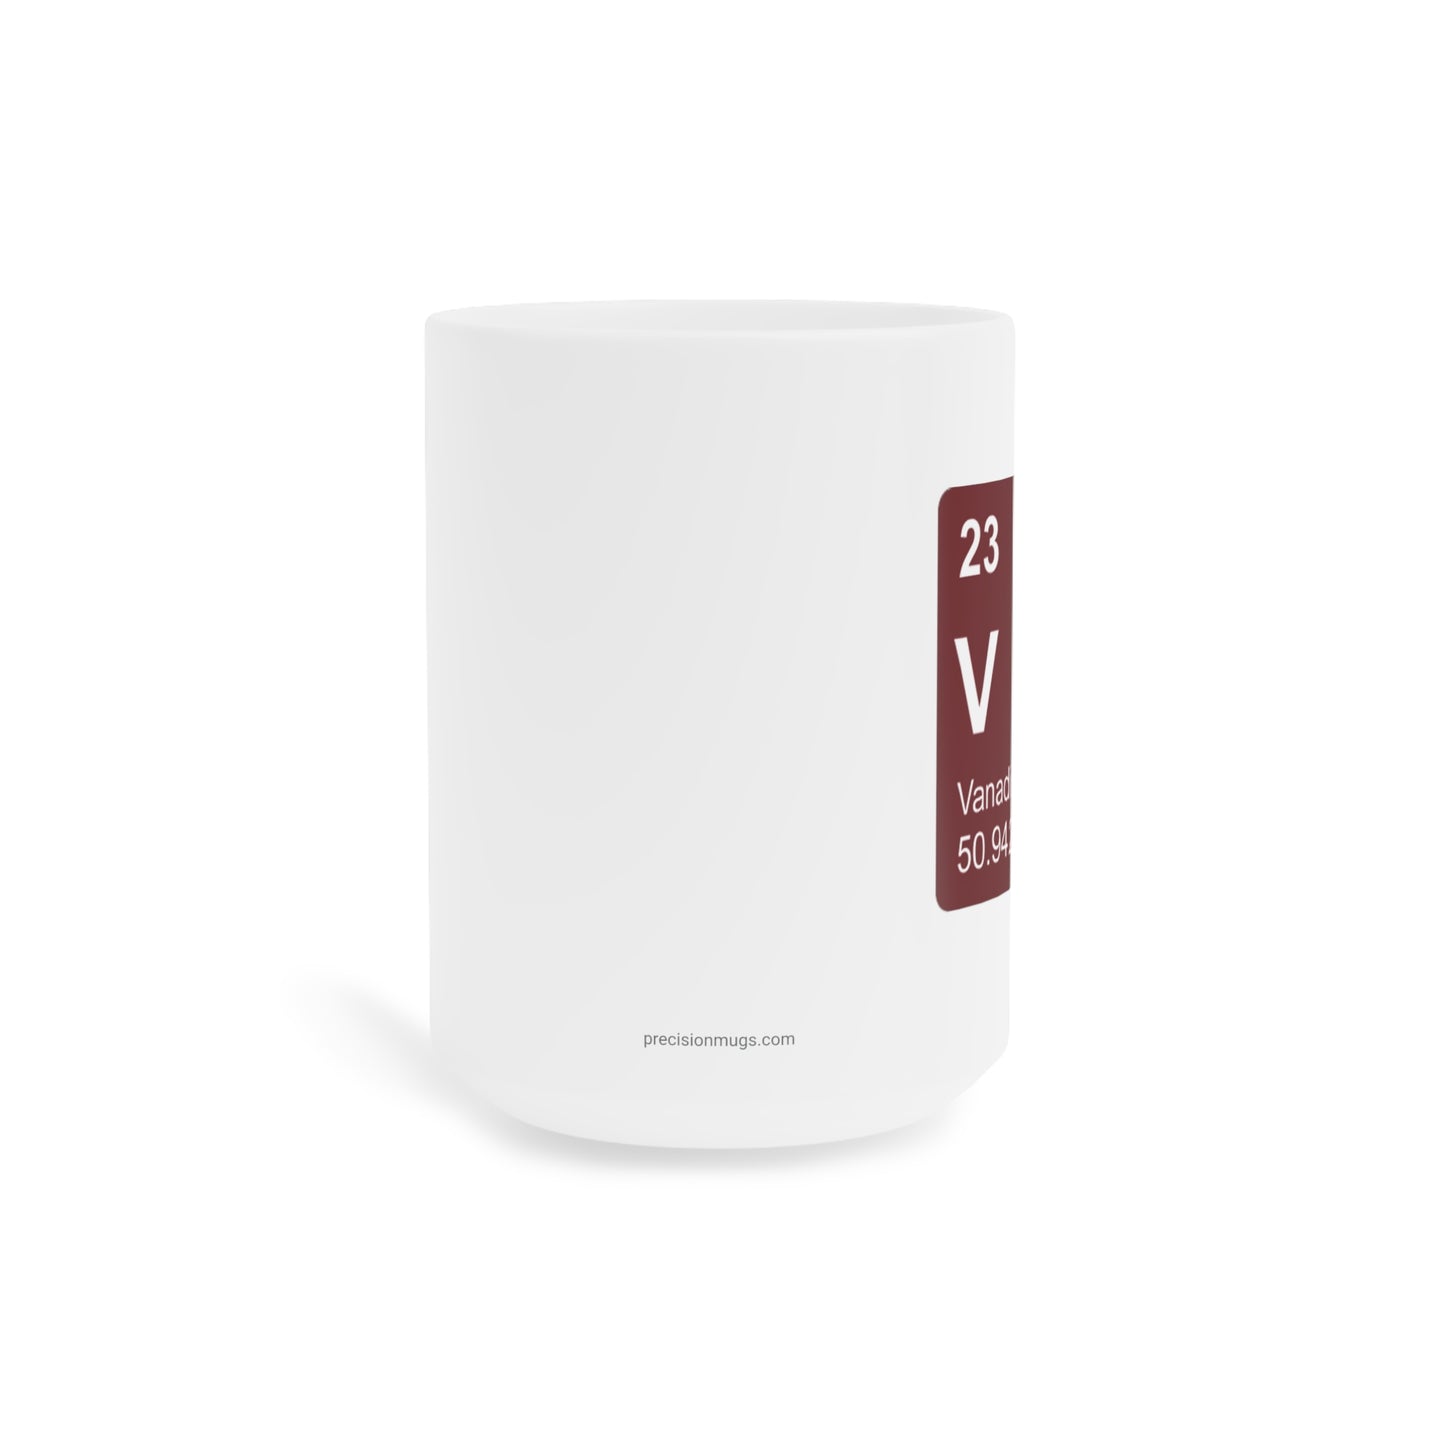 Coffee Mug 15oz - (023) Vanadium V